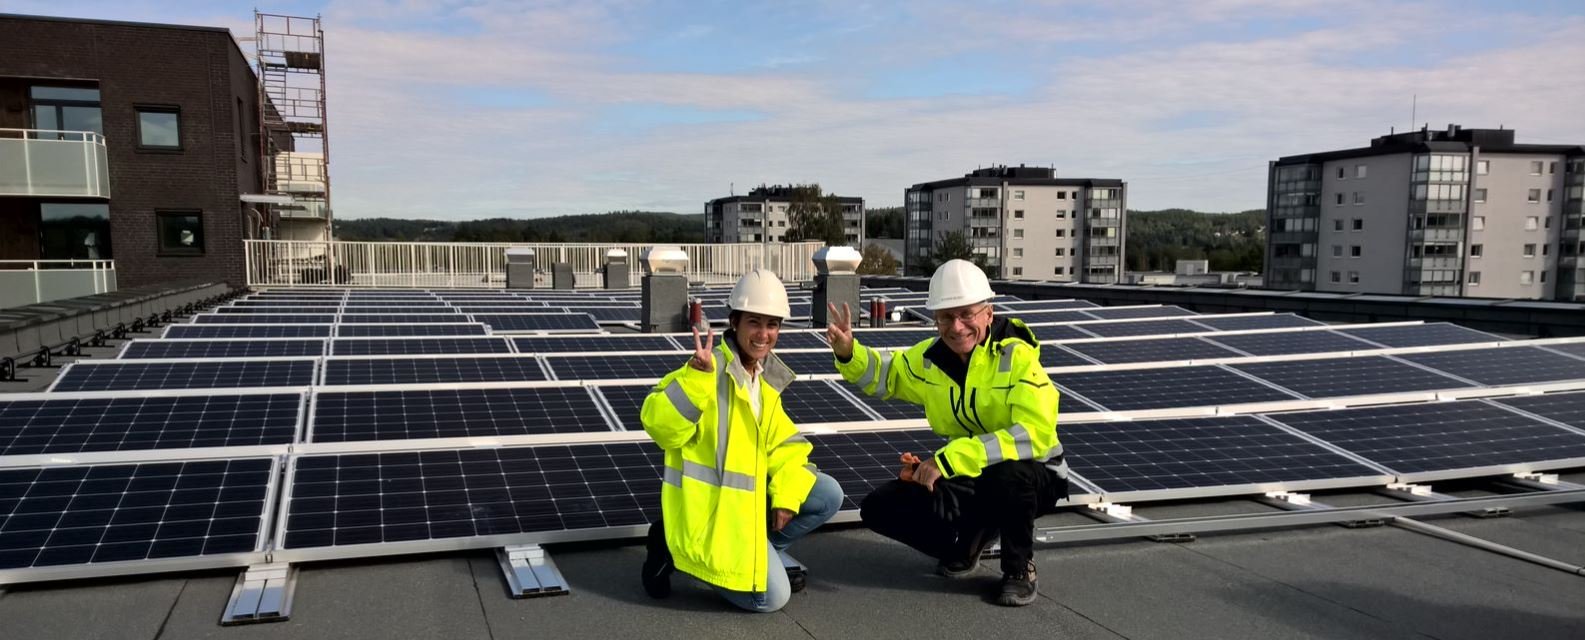 Solcellepaneler på taket i Kjerulfsgate i Lillestrøm